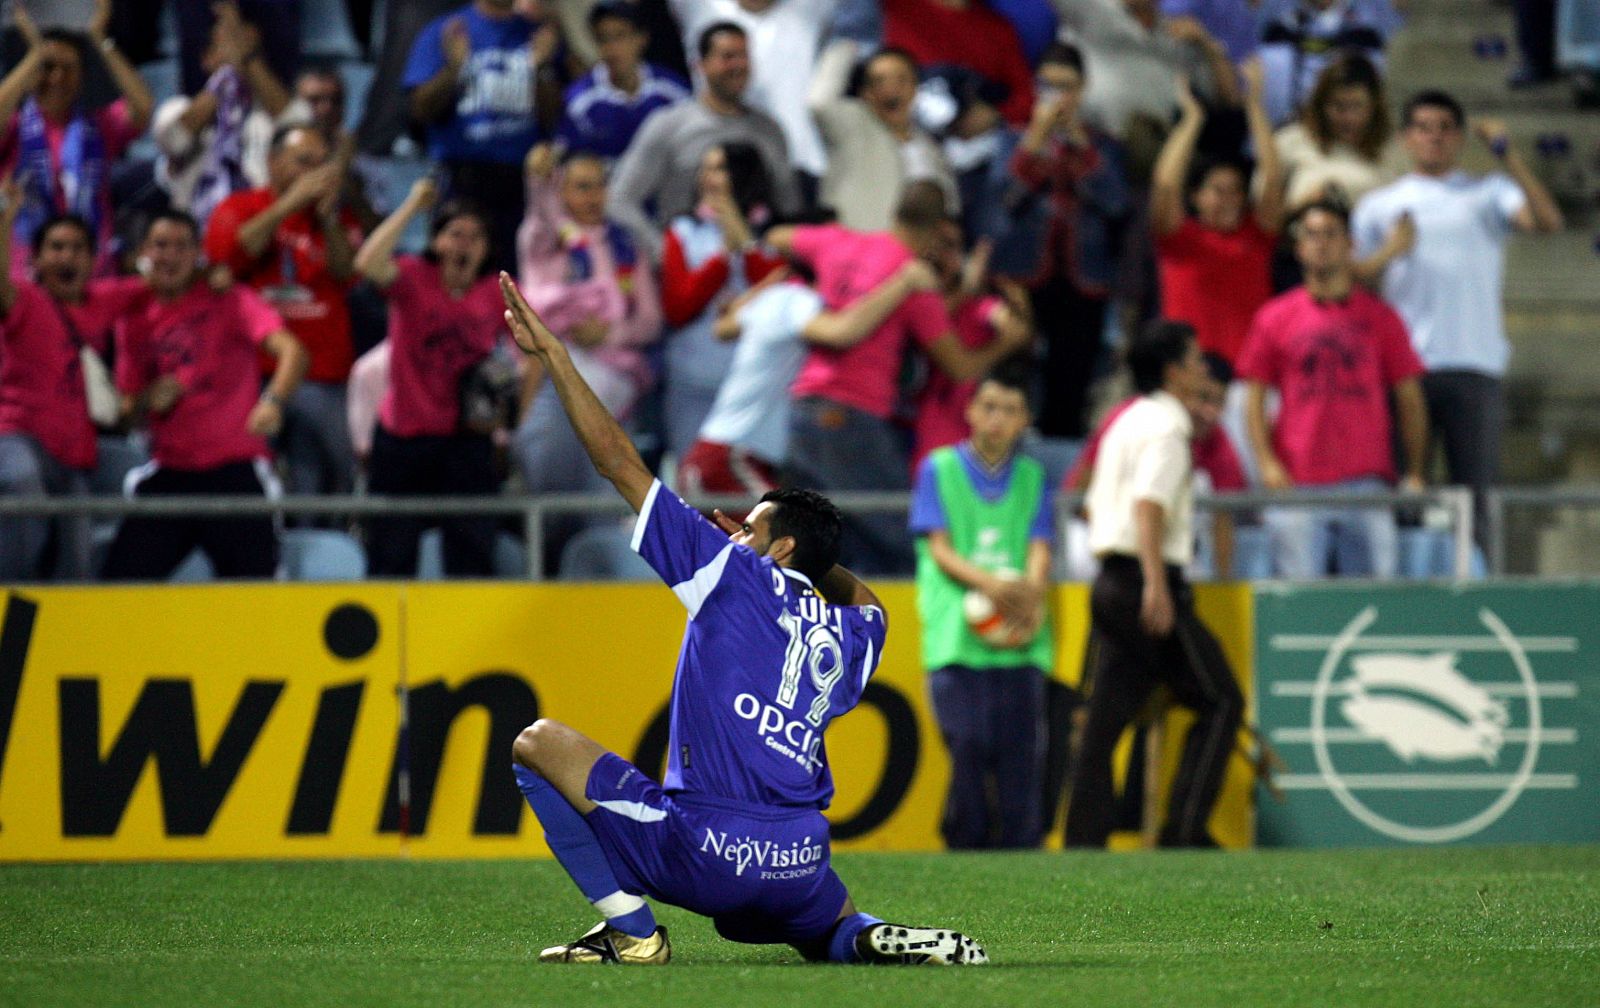 Güiza imita a su ídolo Francisco Narváez "Kiko" en la celebración de cada uno de sus goles.